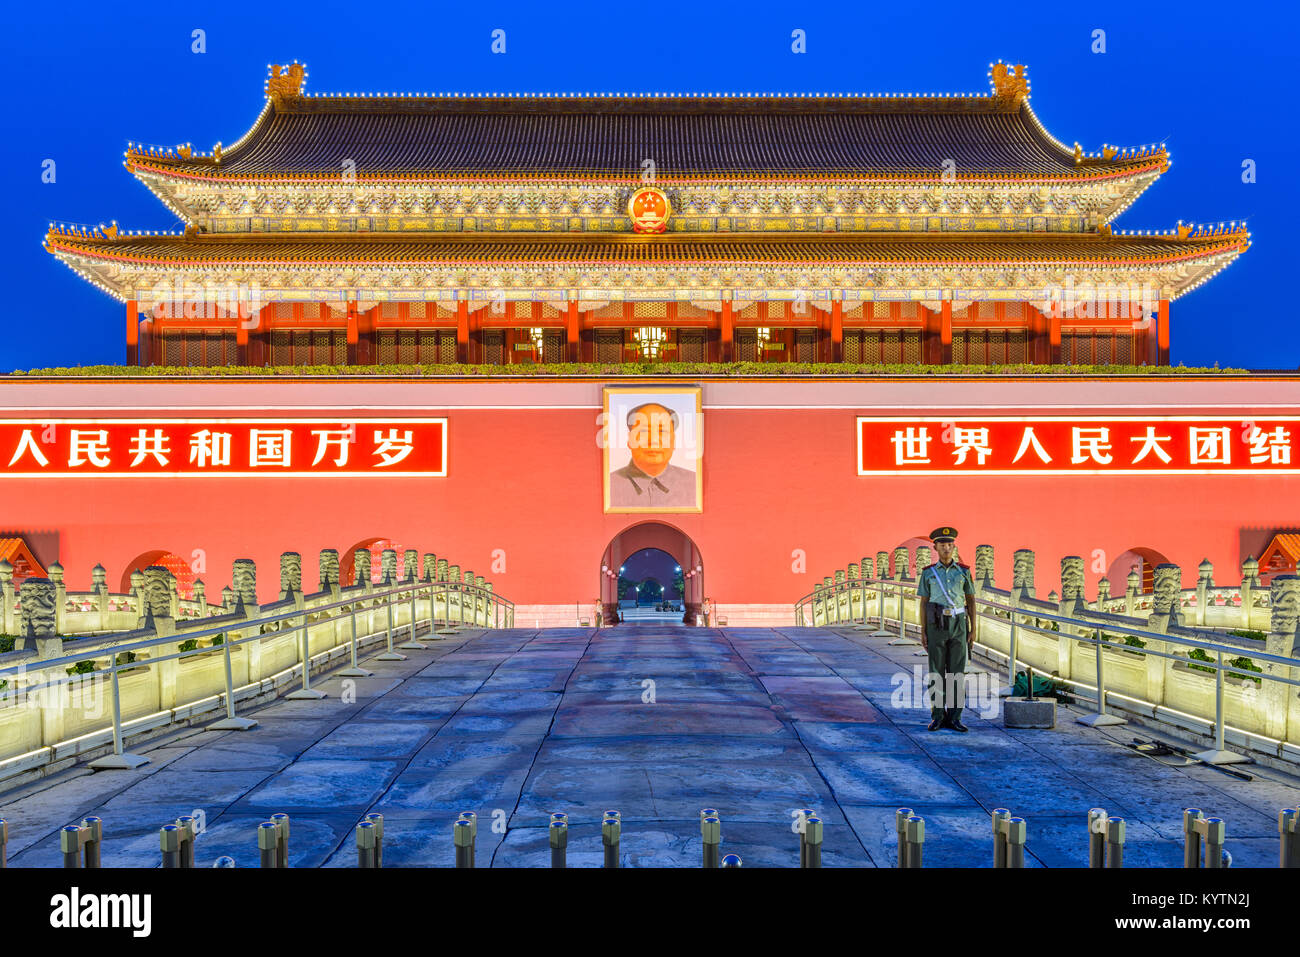 Pechino, Cina - 24 giugno 2014: Il cancello di Tiananmen a Piazza Tiananmen. Il cancello è stato utilizzato come ingresso alla città imperiale, entro cui la Forbi Foto Stock